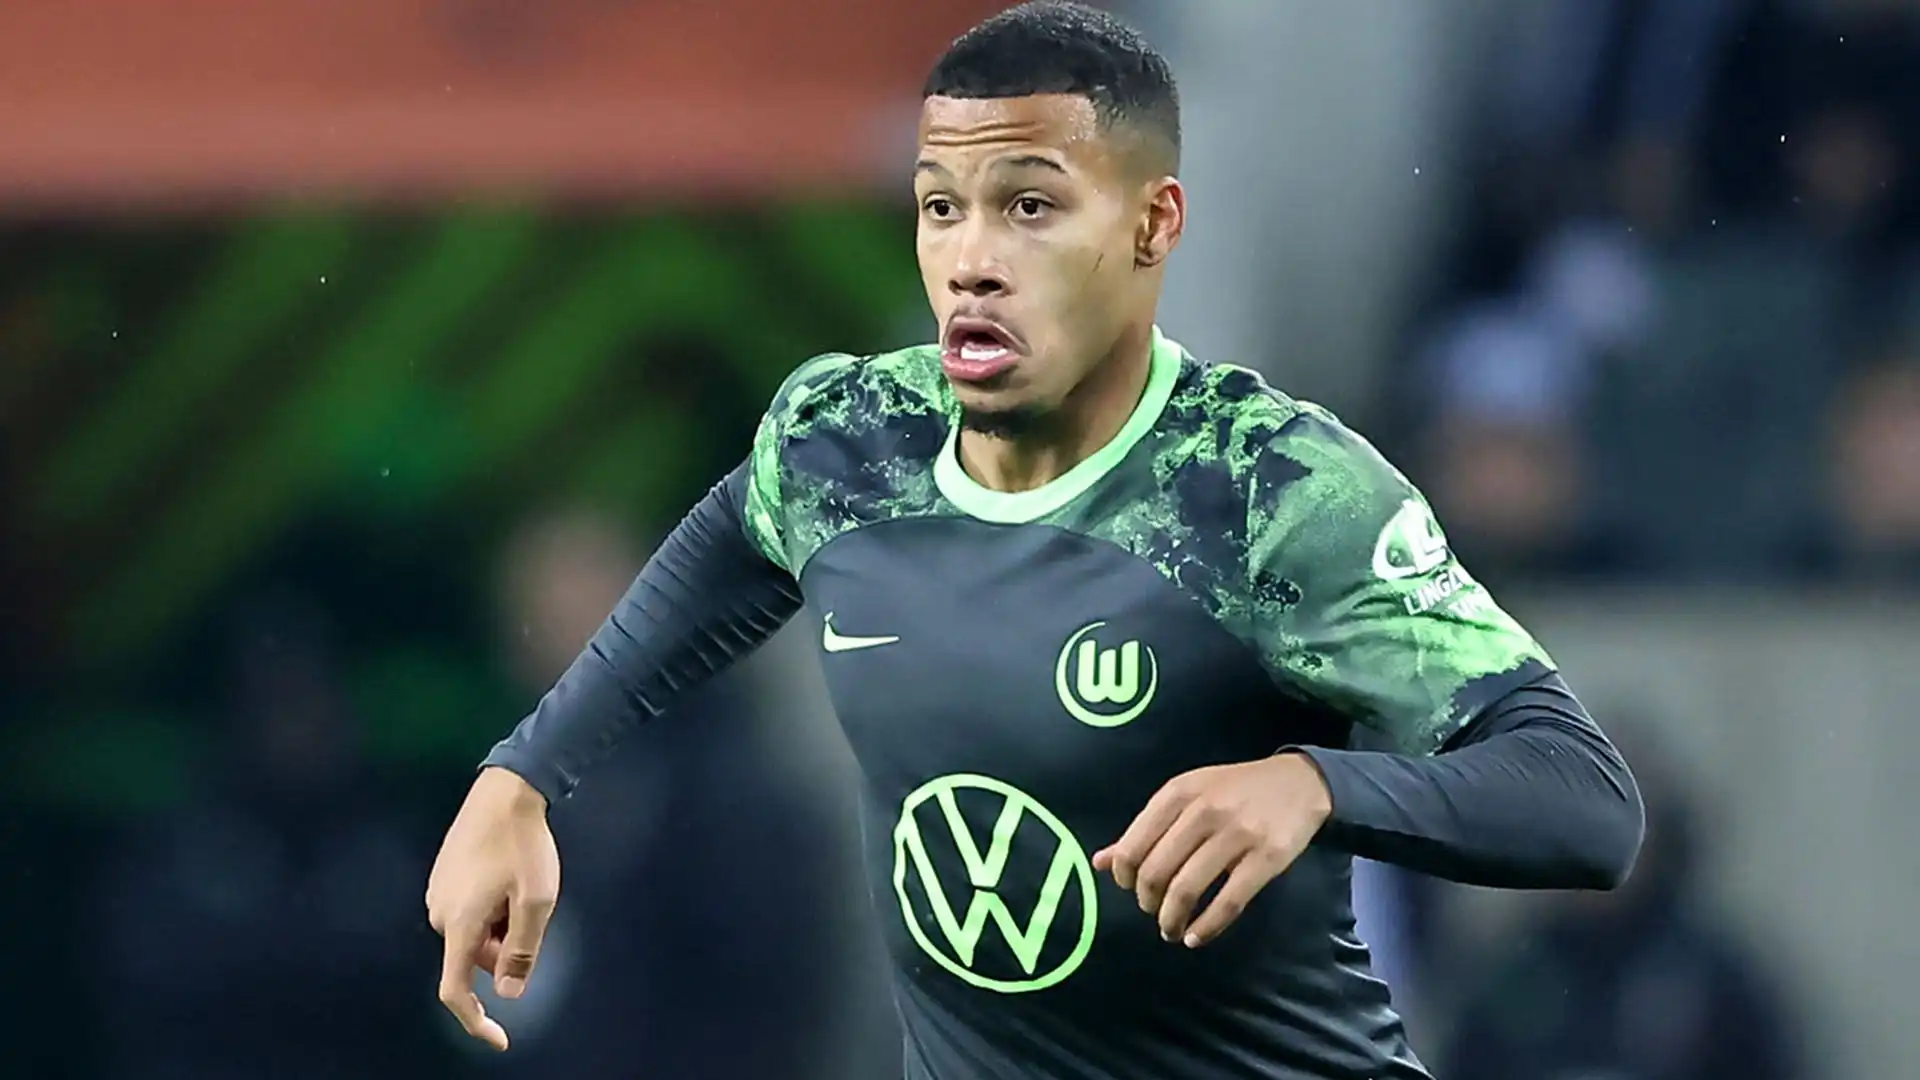 Il calciatore ha un contratto fino al 2025 con il Wolfsburg